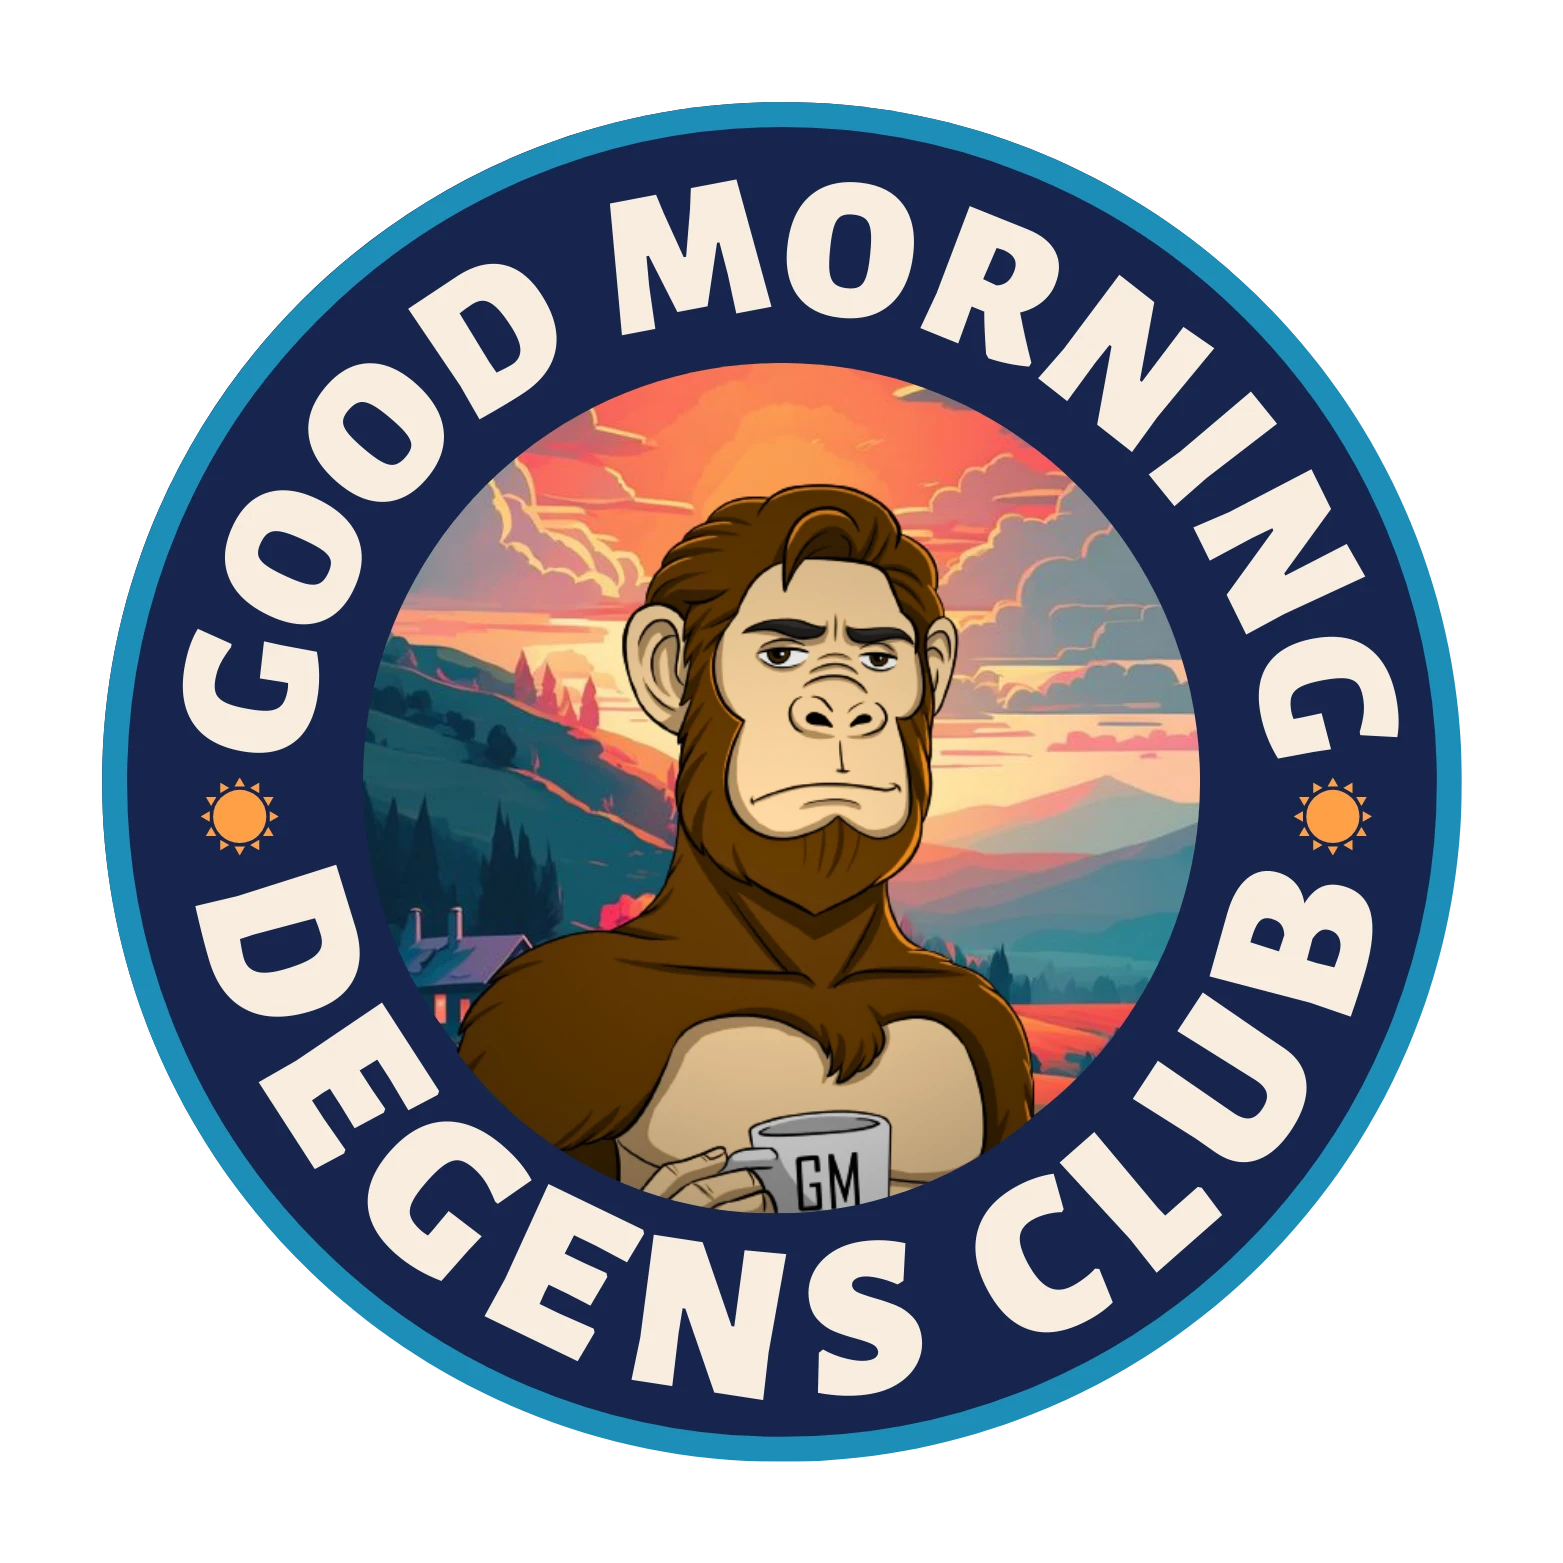 GM Degens Club